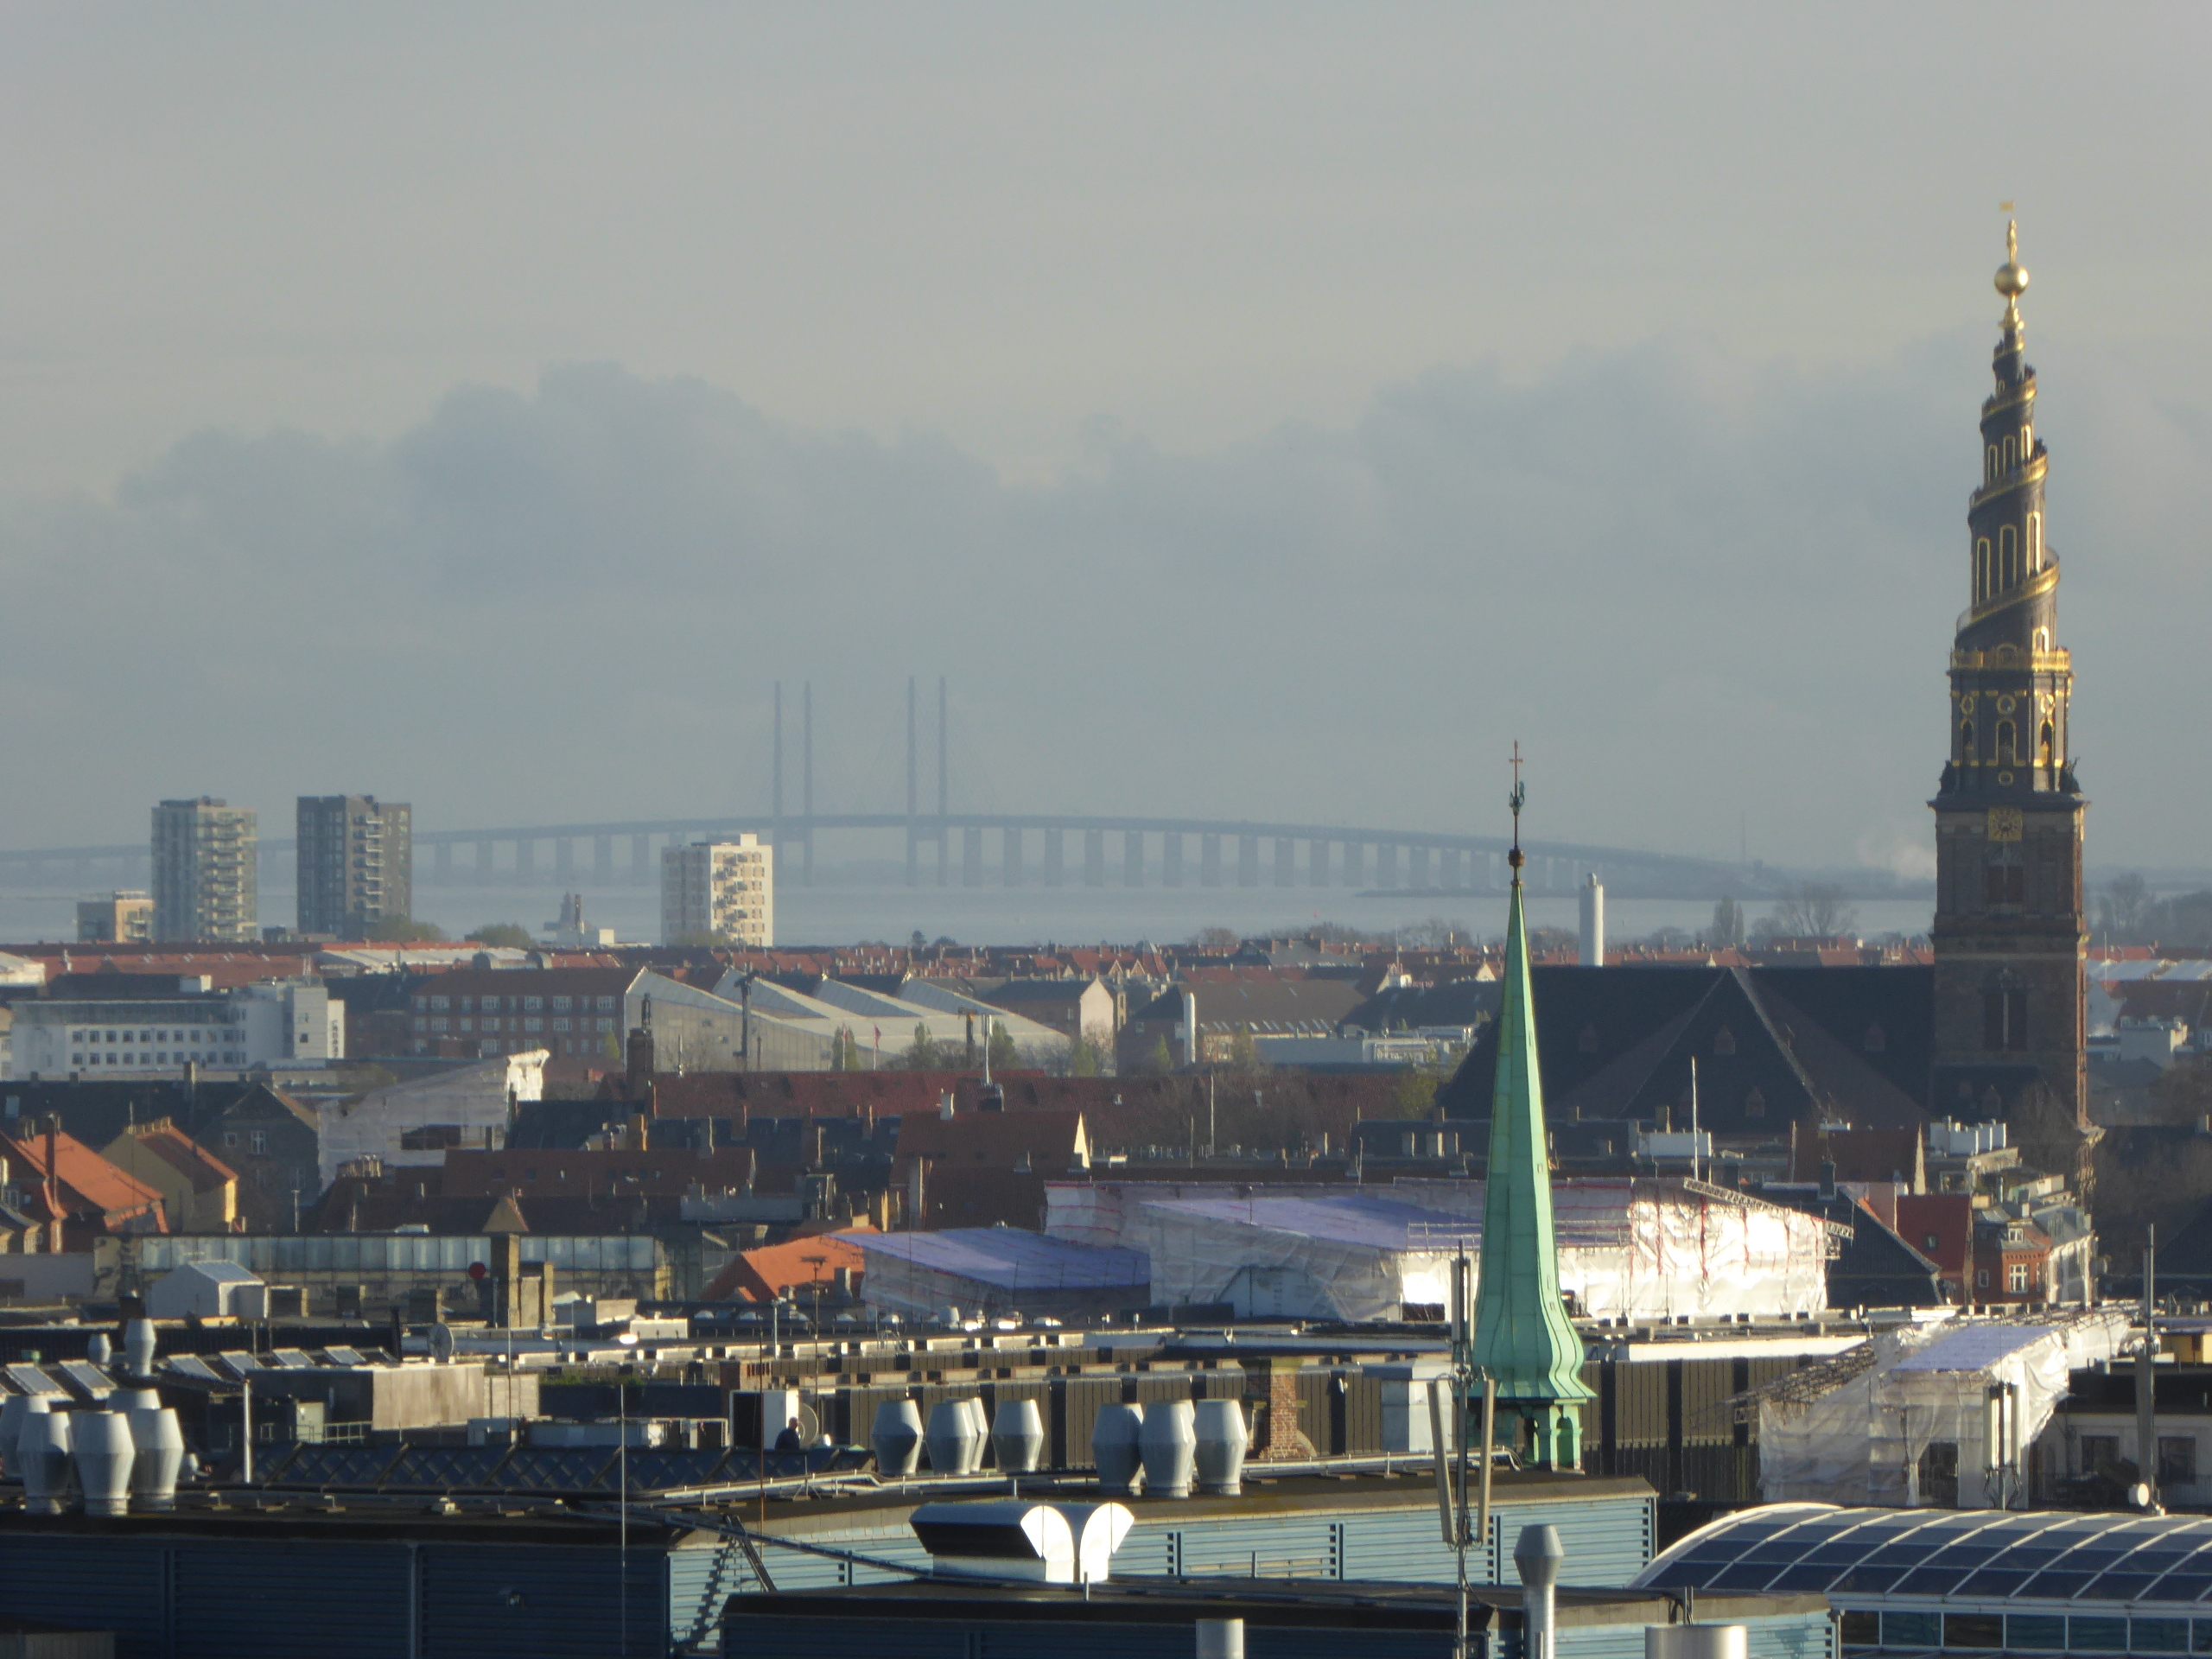 Вид на Эресуннский мост из Копенгагена. Источник https://upload.wikimedia.org/